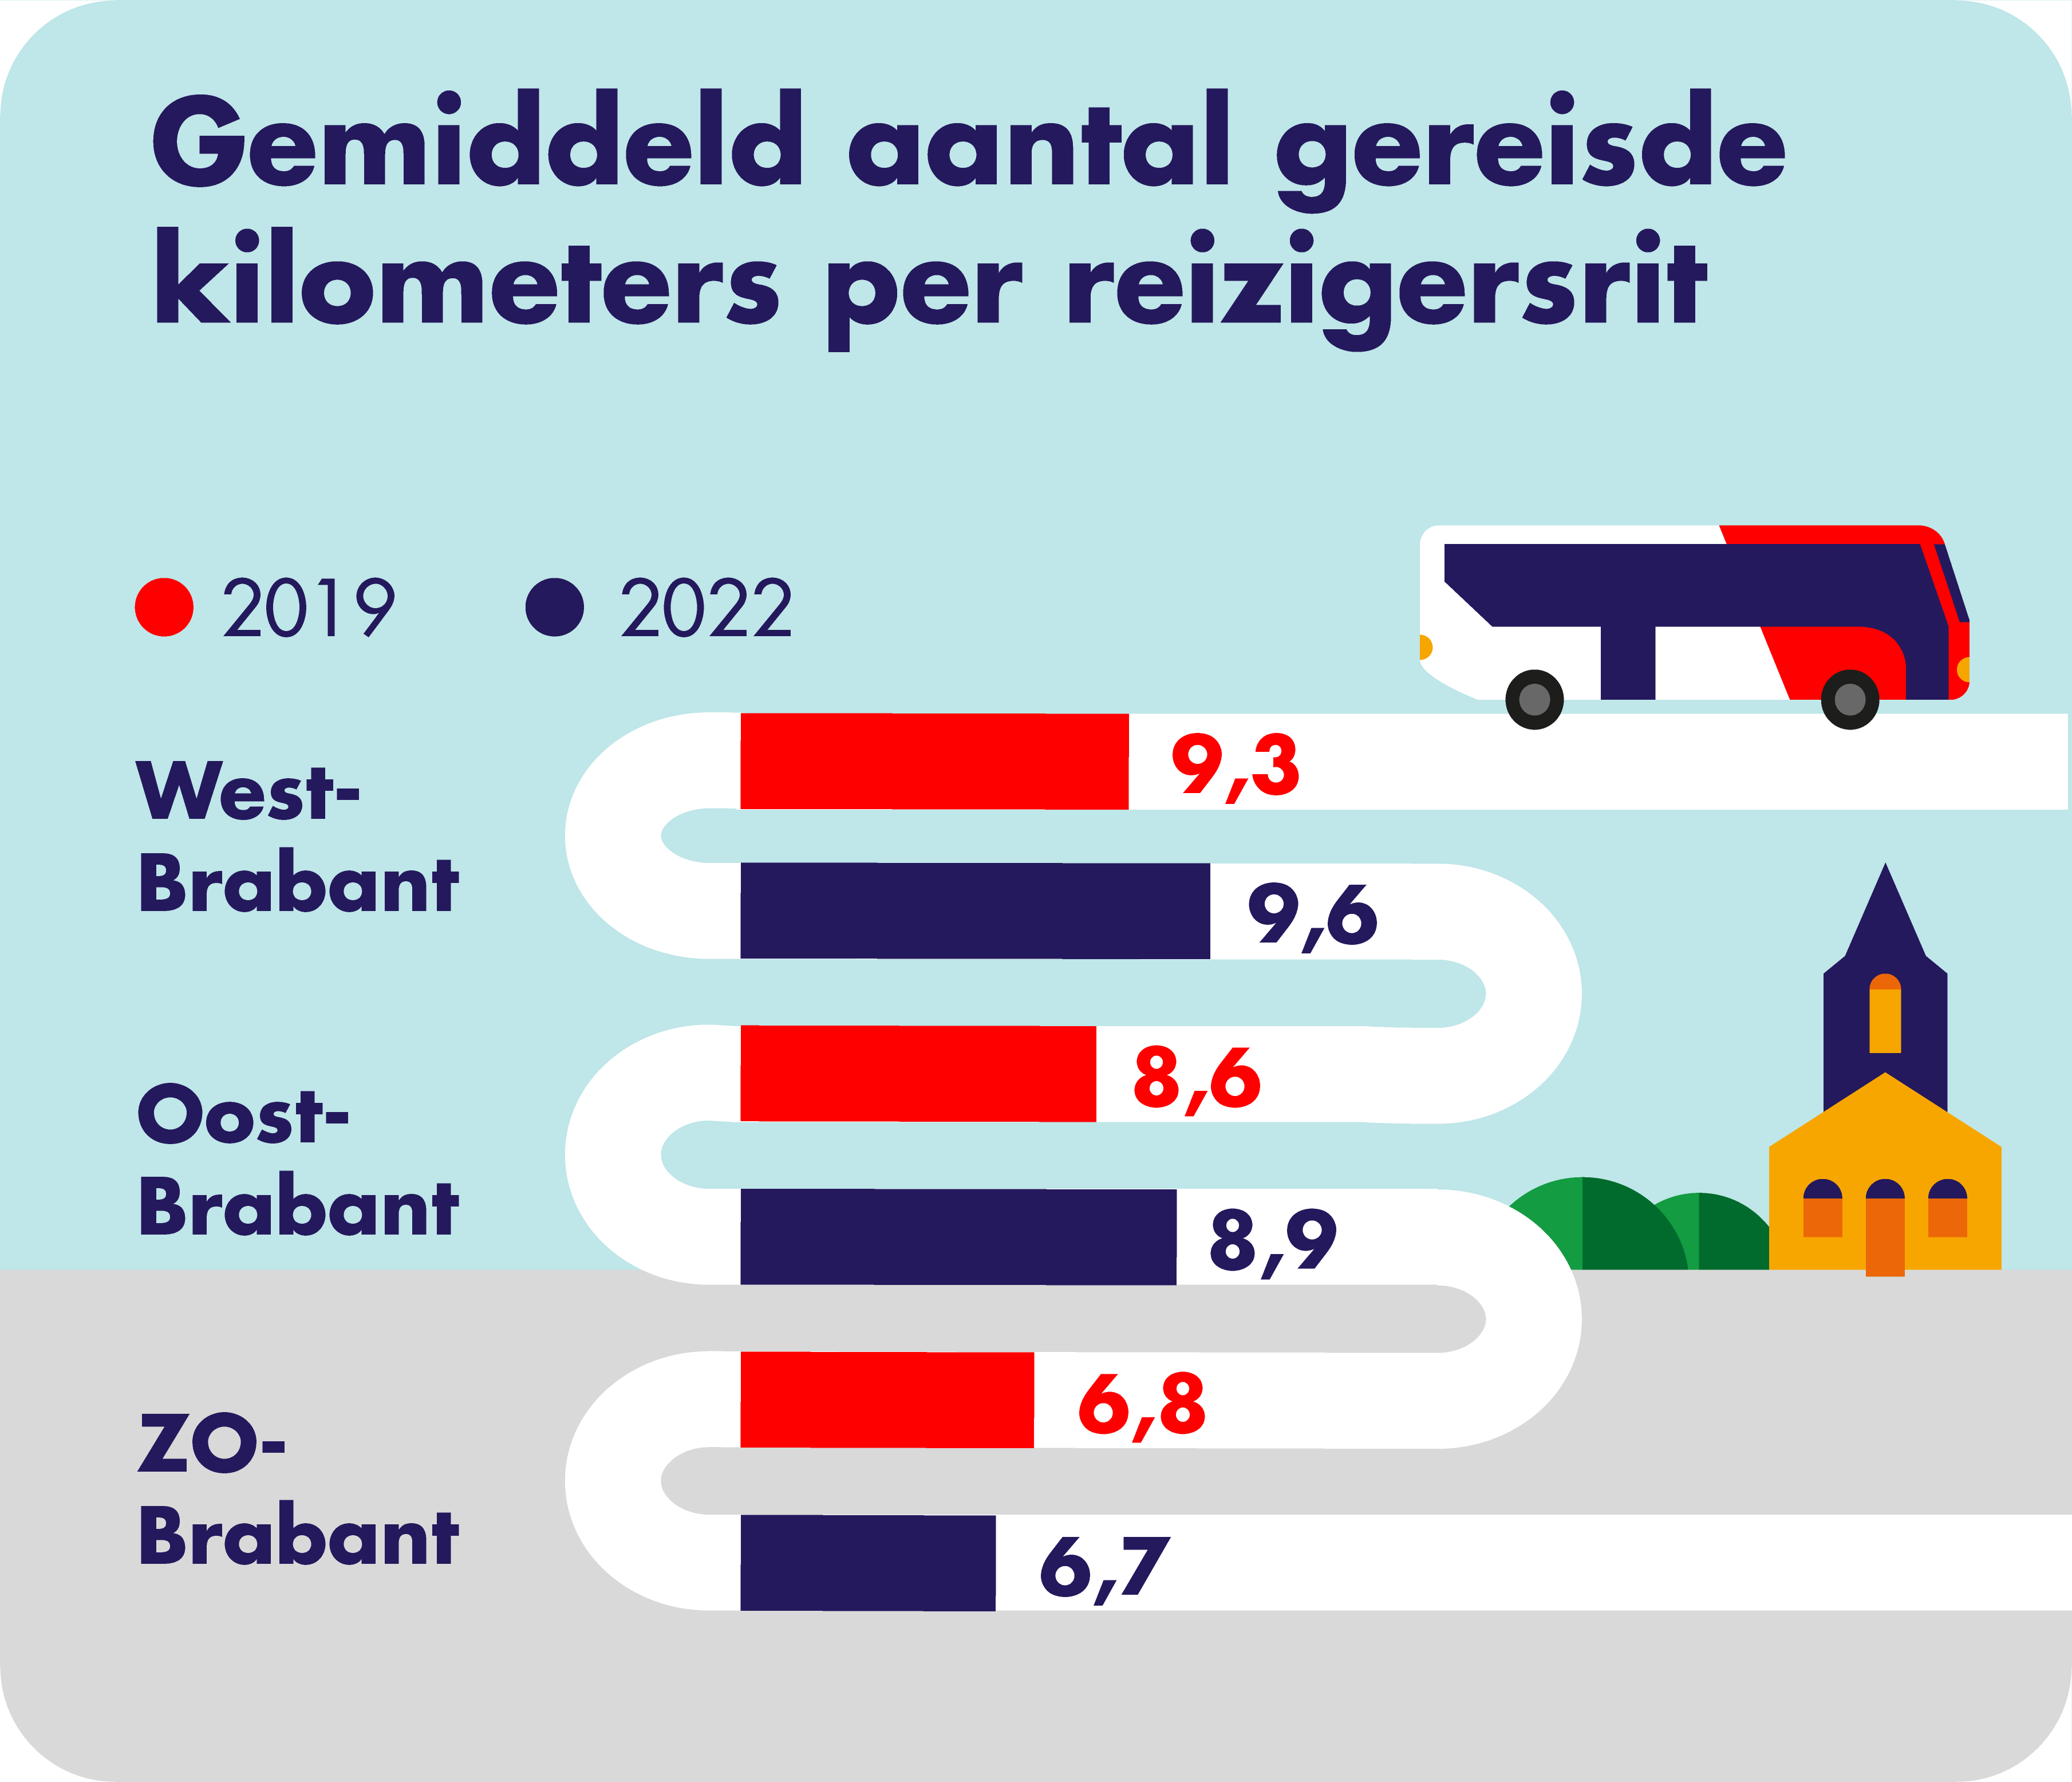 Op deze afbeelding is het gemiddeld aantal gereisde kilometers per reizigersrit en per concessiegebied weergegeven. In West-Brabant is er in 2019 gemiddeld 9,3 kilometer en in 2022 gemiddeld 9,6 kilometer per reizigersrit afgelegd. In Oost-Brabant is er in zowel 2019 gemiddeld 8,6 kilometer en in 2022 gemiddeld 8,9 kilometer per reizigersrit afgelegd. In Zuidoost-Brabant is er in 2019 gemiddeld 6,5 kilometer en in 2022 gemiddeld 6,7 kilometer per reizigersrit afgelegd.